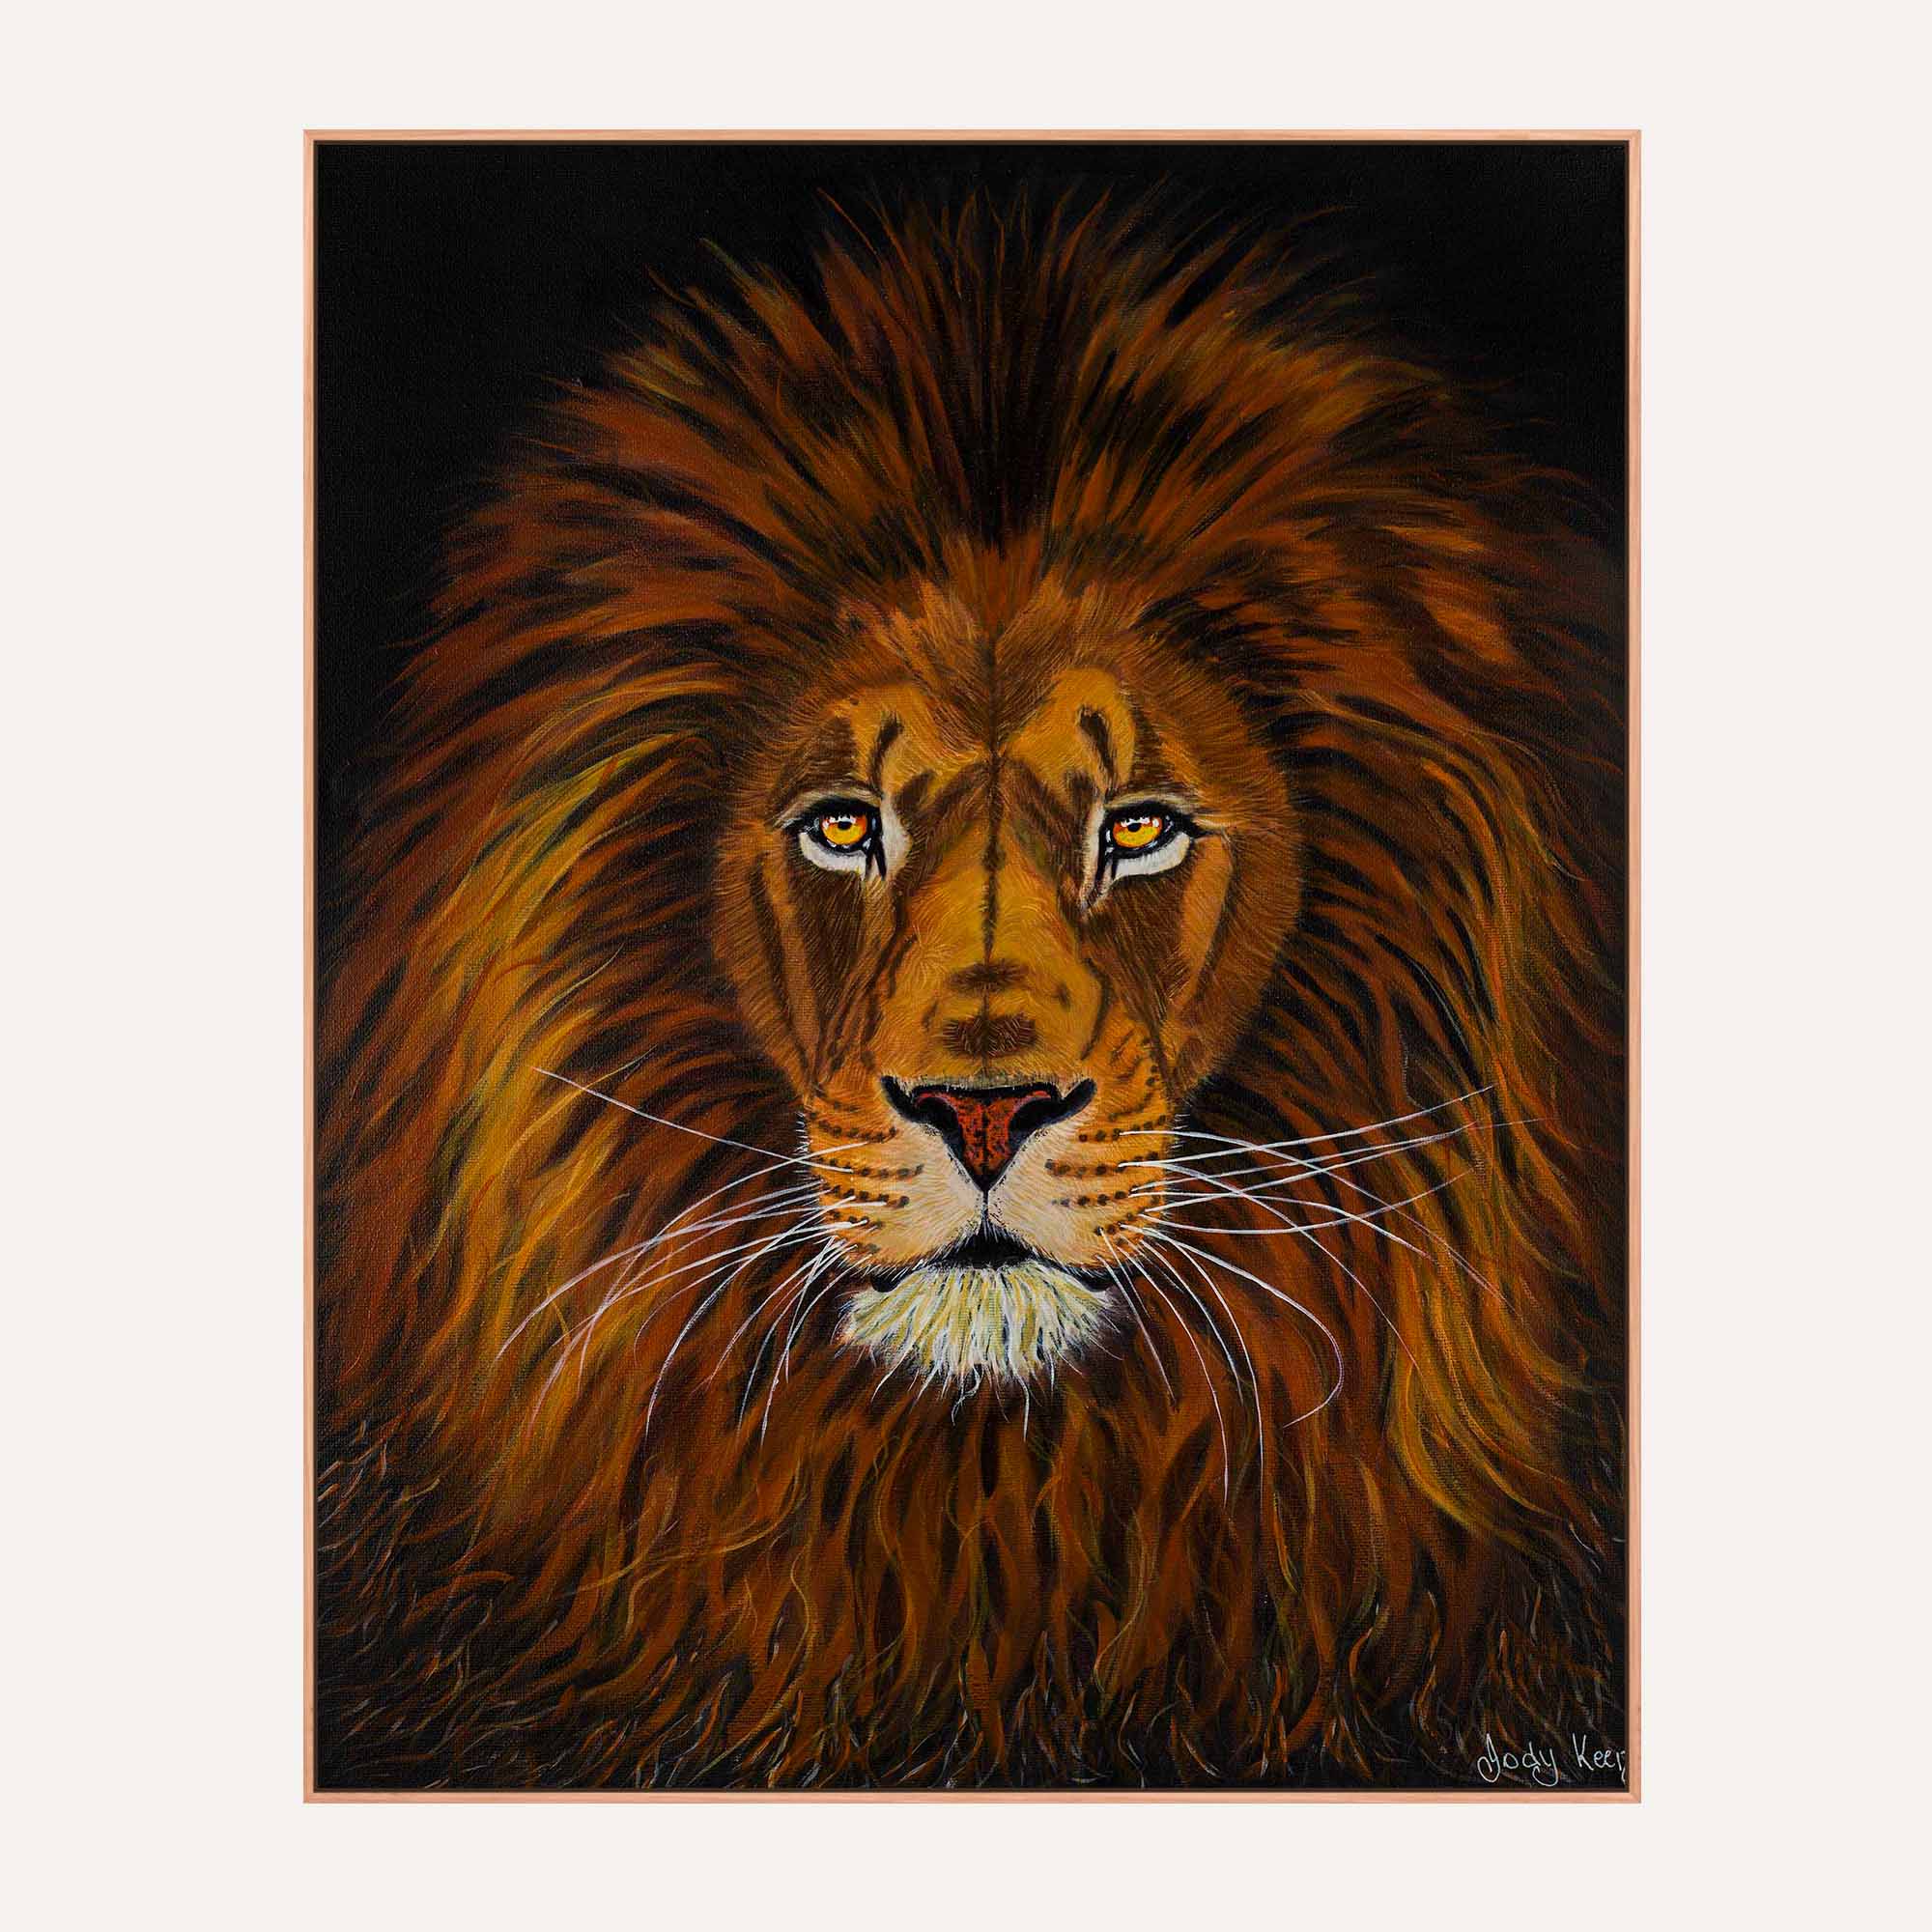 76. Lion King